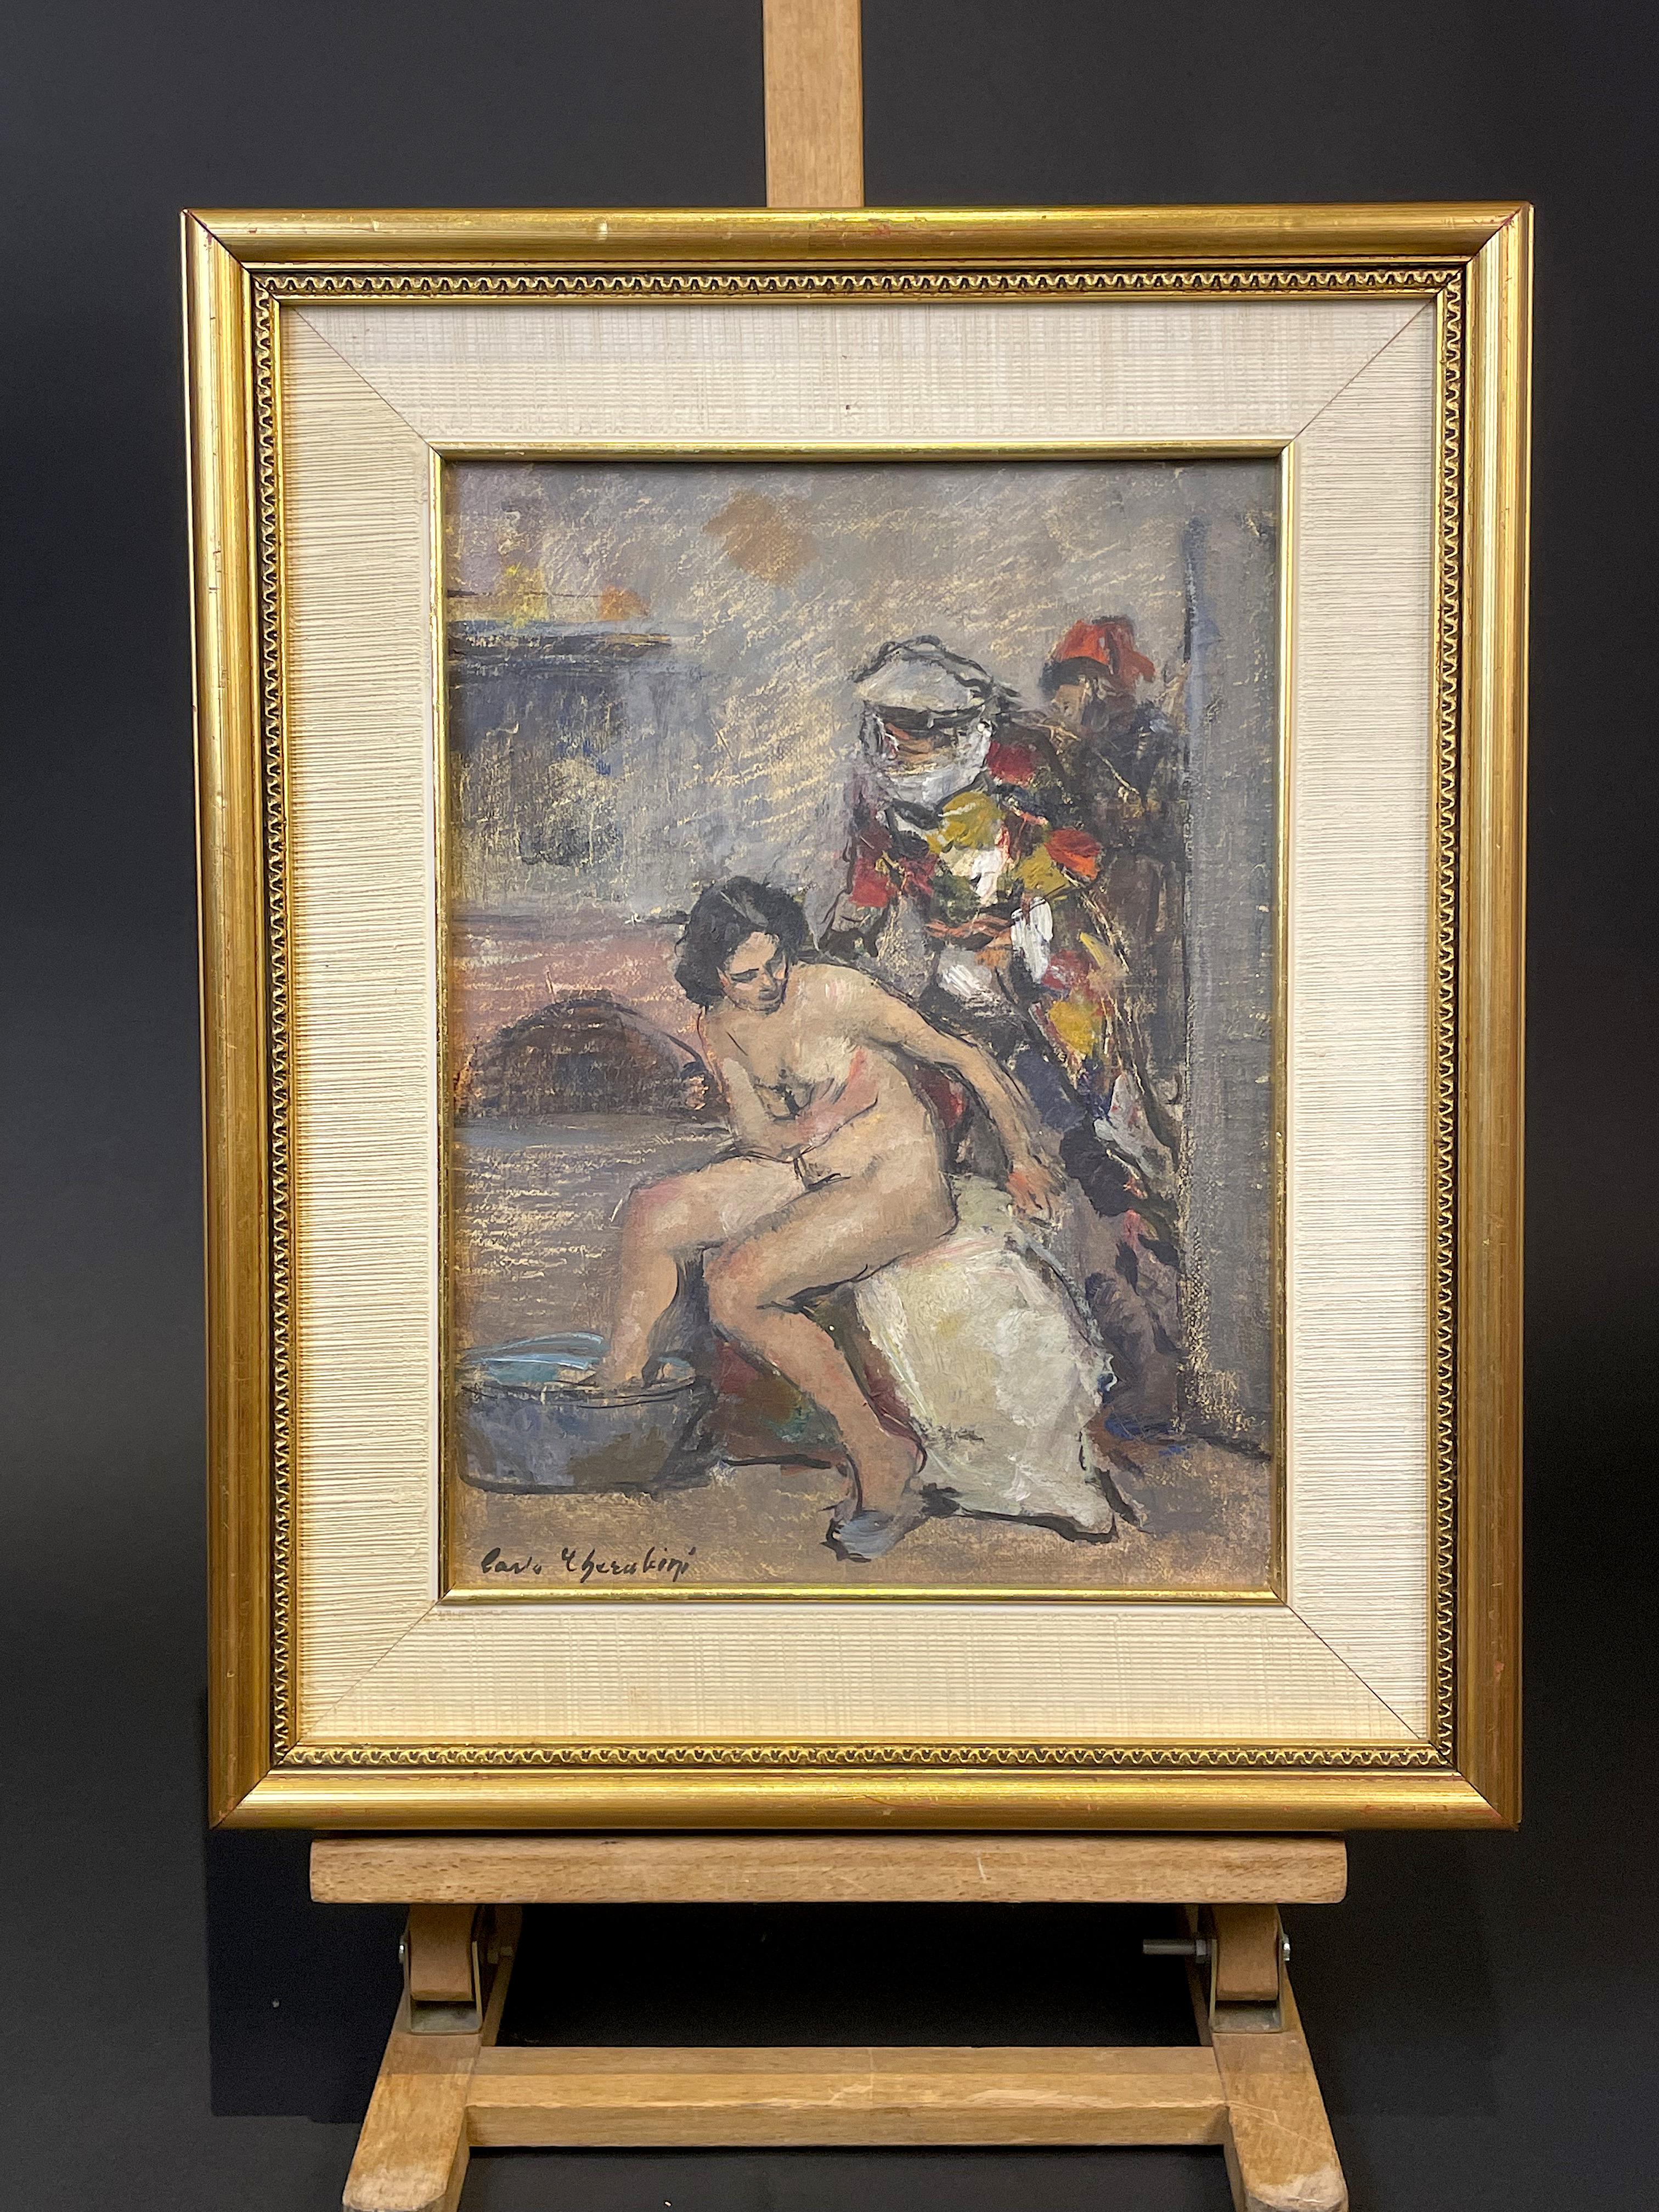 Ölgemälde auf Leinwand des venezianischen Malers Carlo CHERUBINI (Anona 1897-1978 Venedig) aus den 1950er Jahren.
Das fragliche Werk zeigt im Vordergrund einen sitzenden weiblichen Akt; dahinter befinden sich maskierte Figuren (die auf die Maske